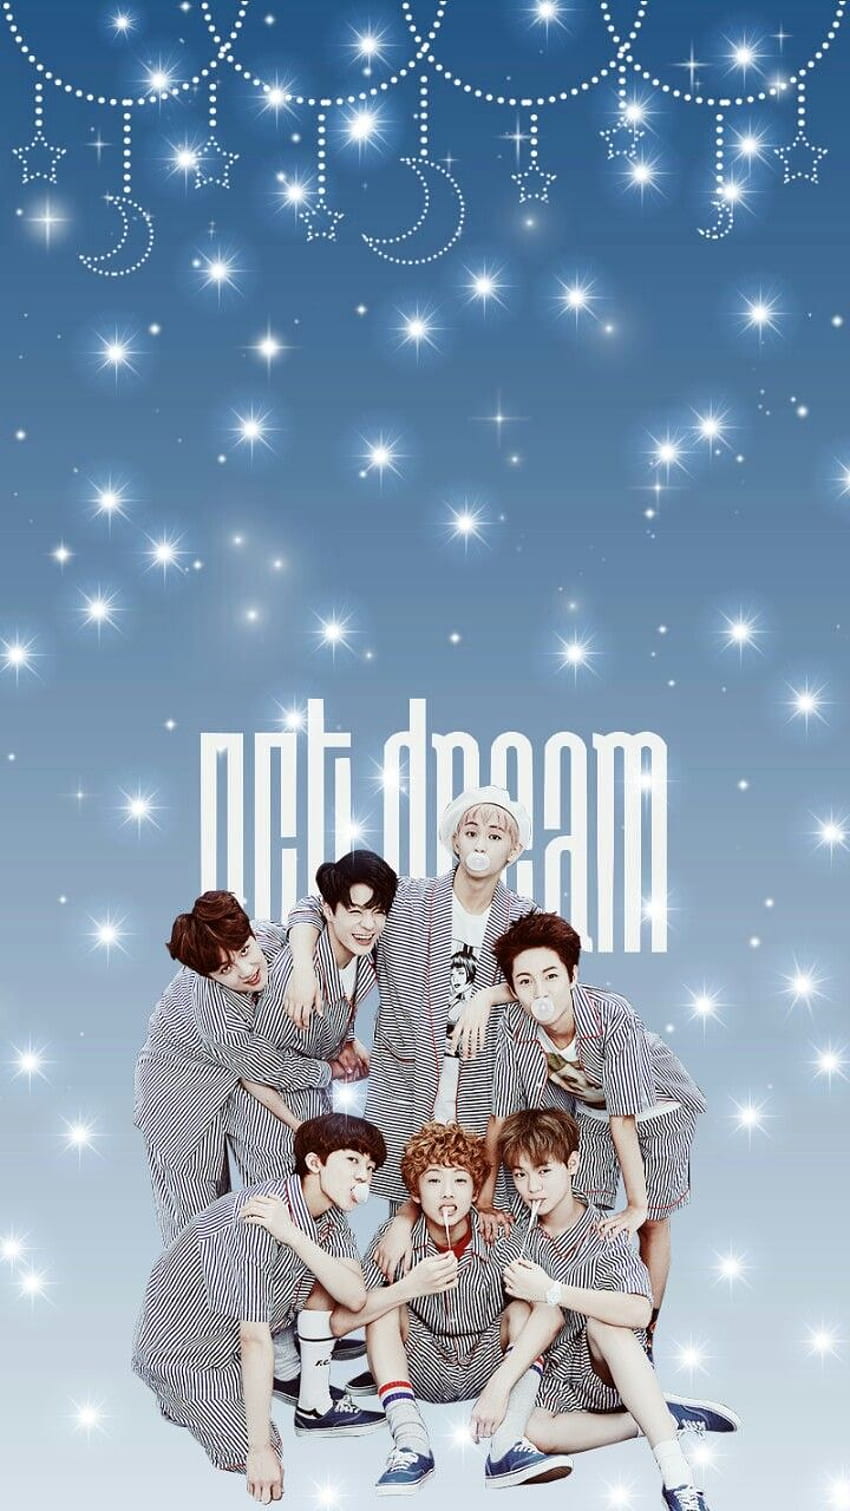 Tải xuống APK Hình nền thành viên NCT Dream Hd cho Android